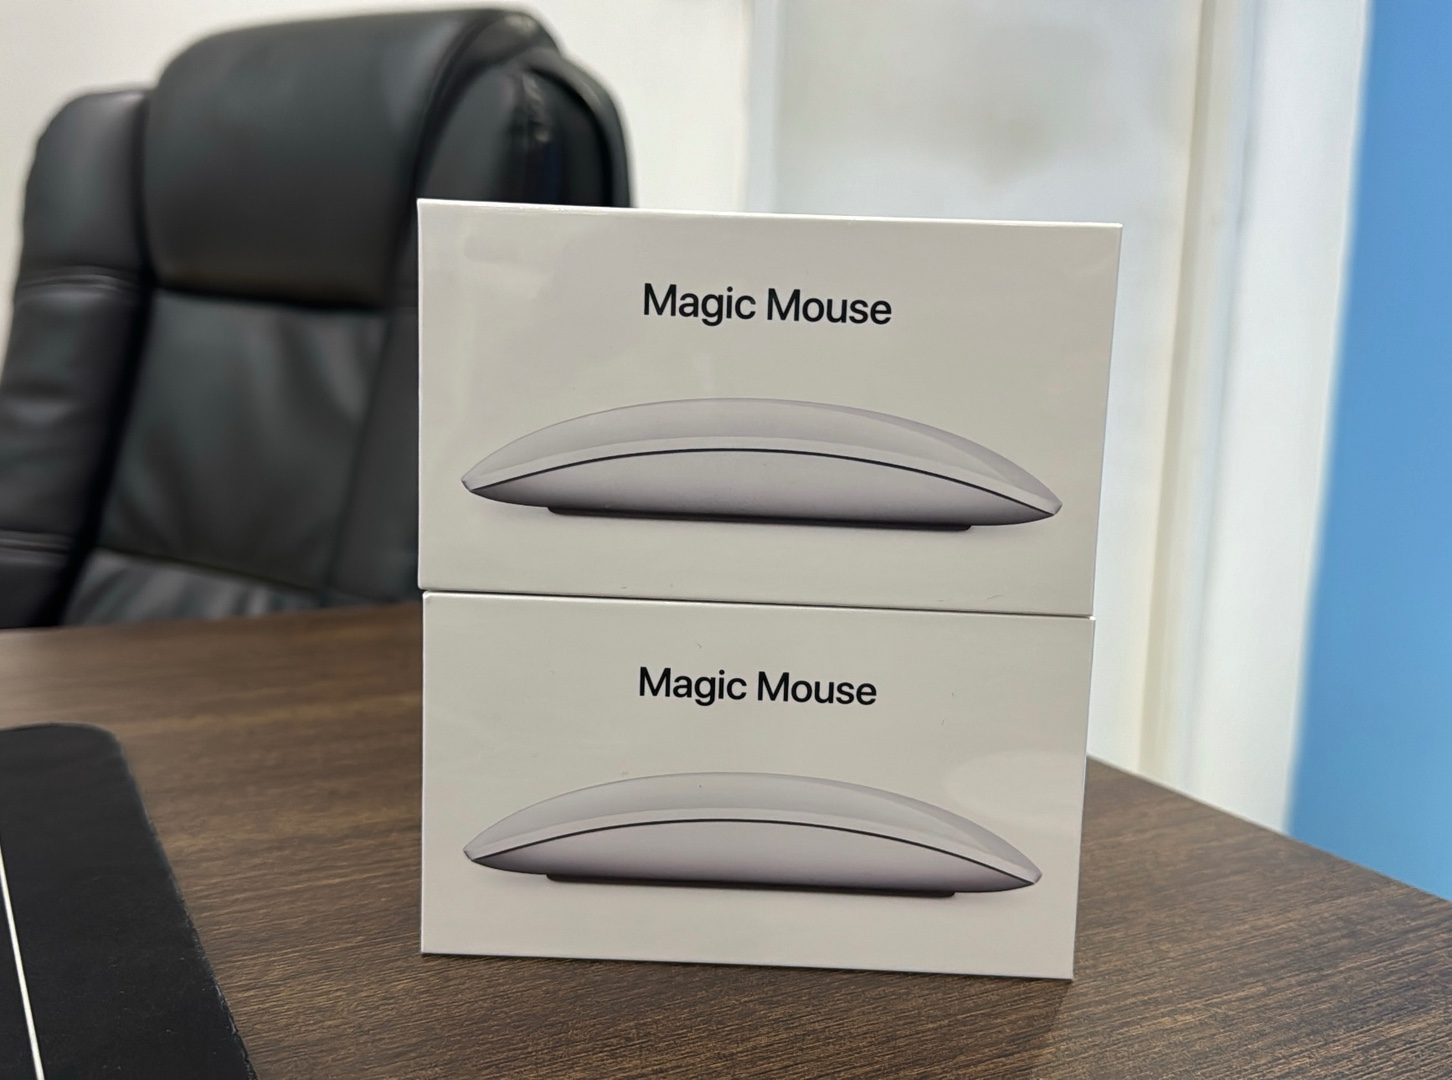 accesorios para electronica - Magic Mouse (2da Gen) Nuevos Sellados by Apple, Garantía, RD$ 6,300 NEG